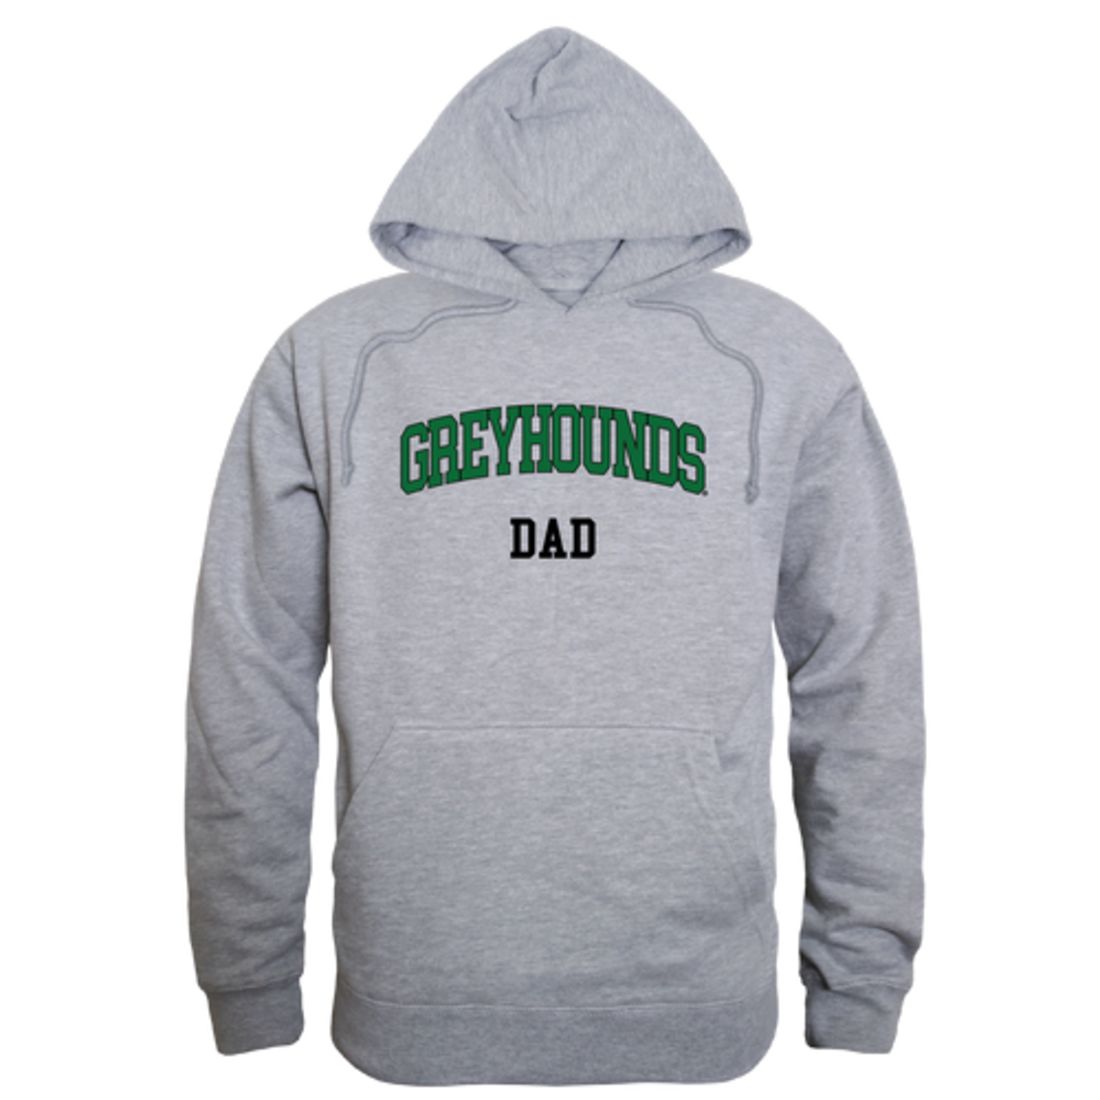 Eastern-New-Mexico-University-Greyhounds-Dad-Fleece-Hoodie-Sweatshirts